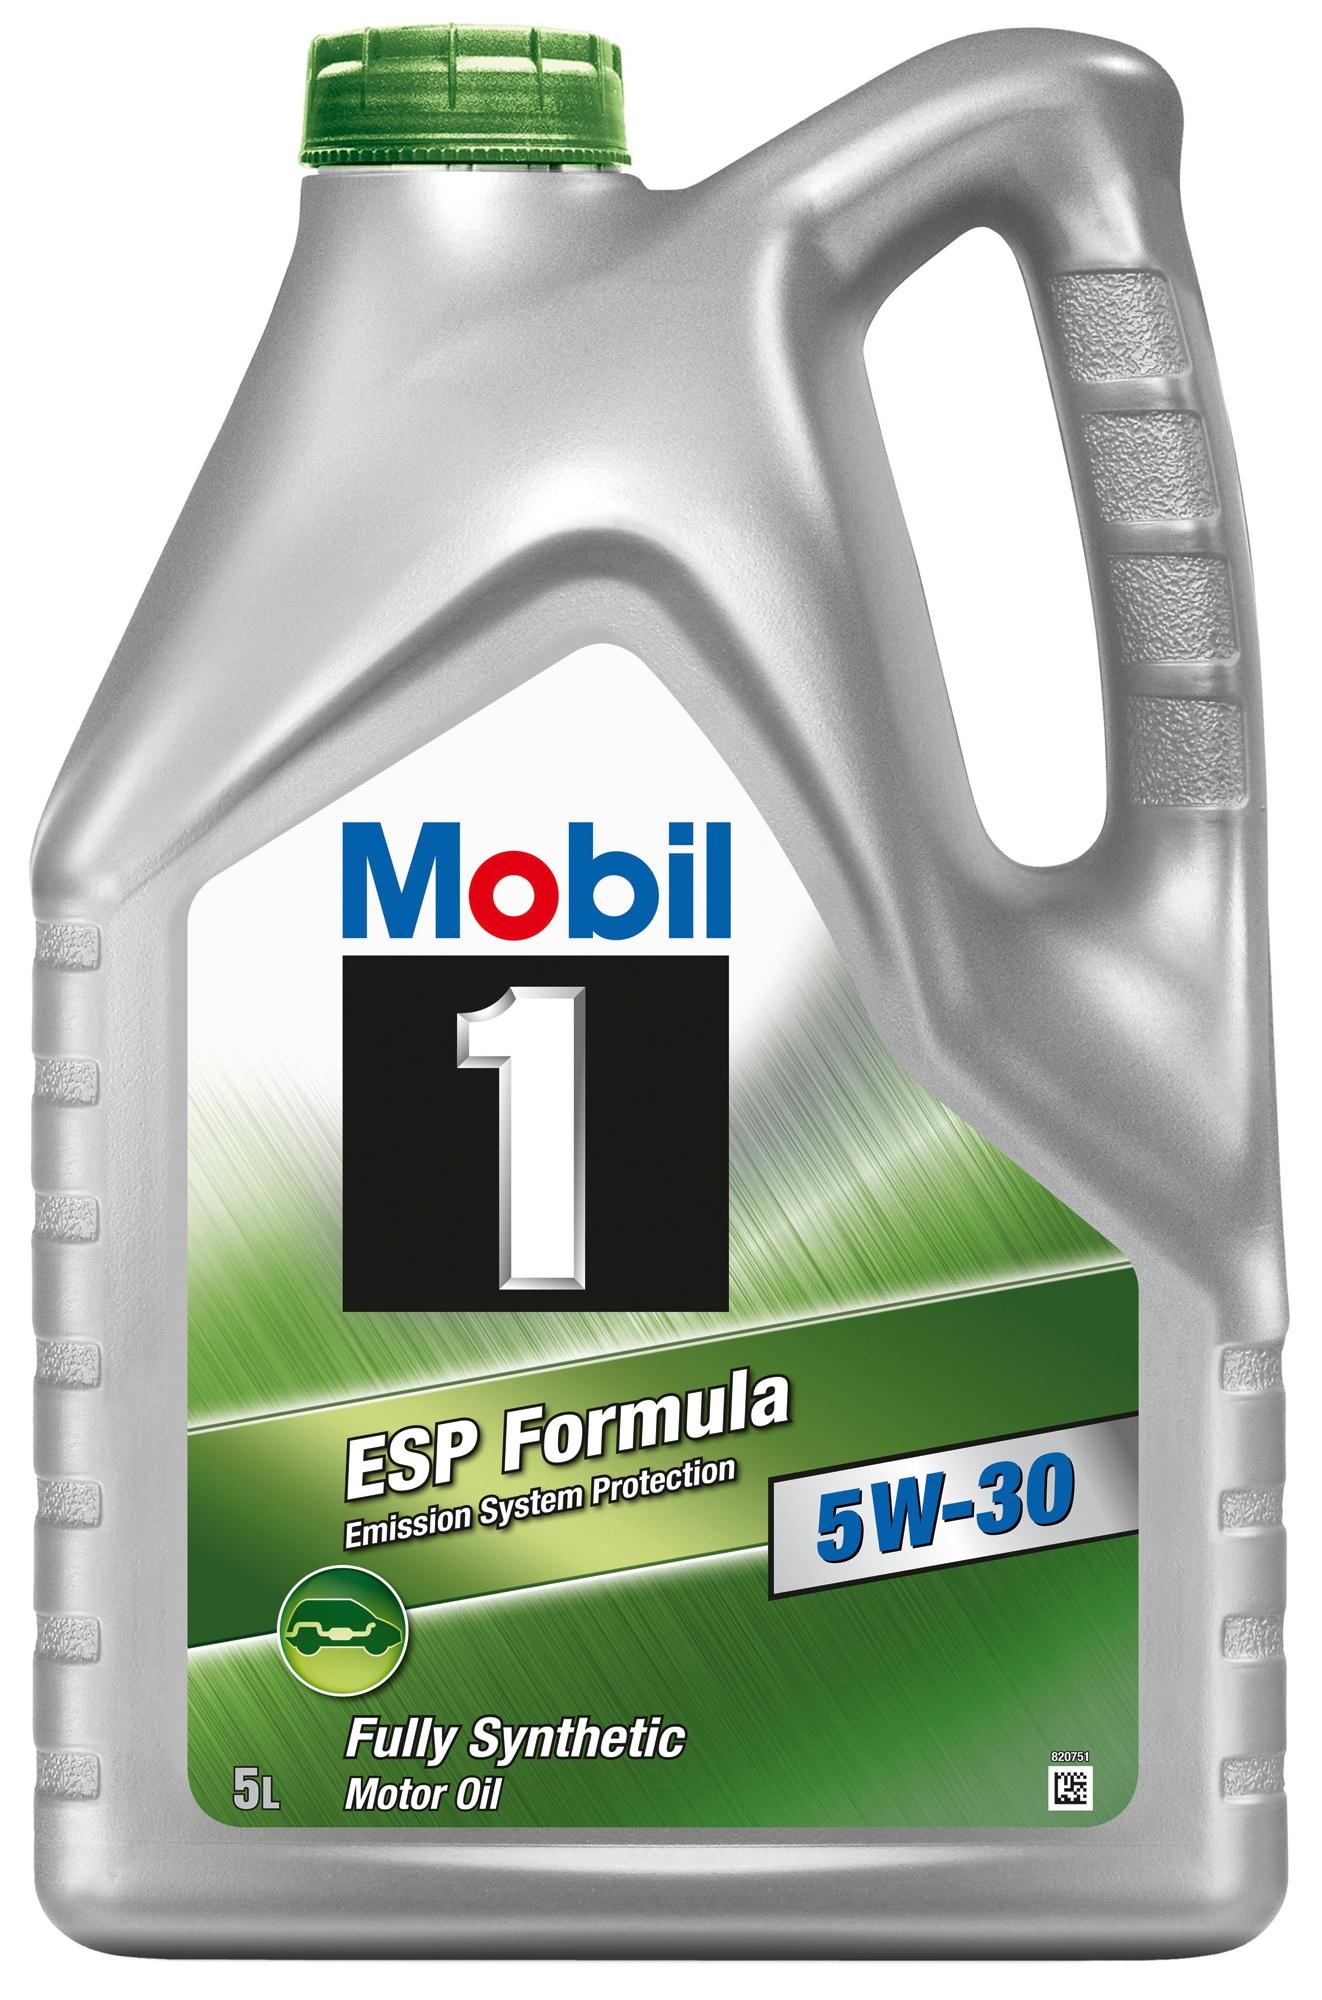 Mobil 1 Esp 5W/30 Oil 5L